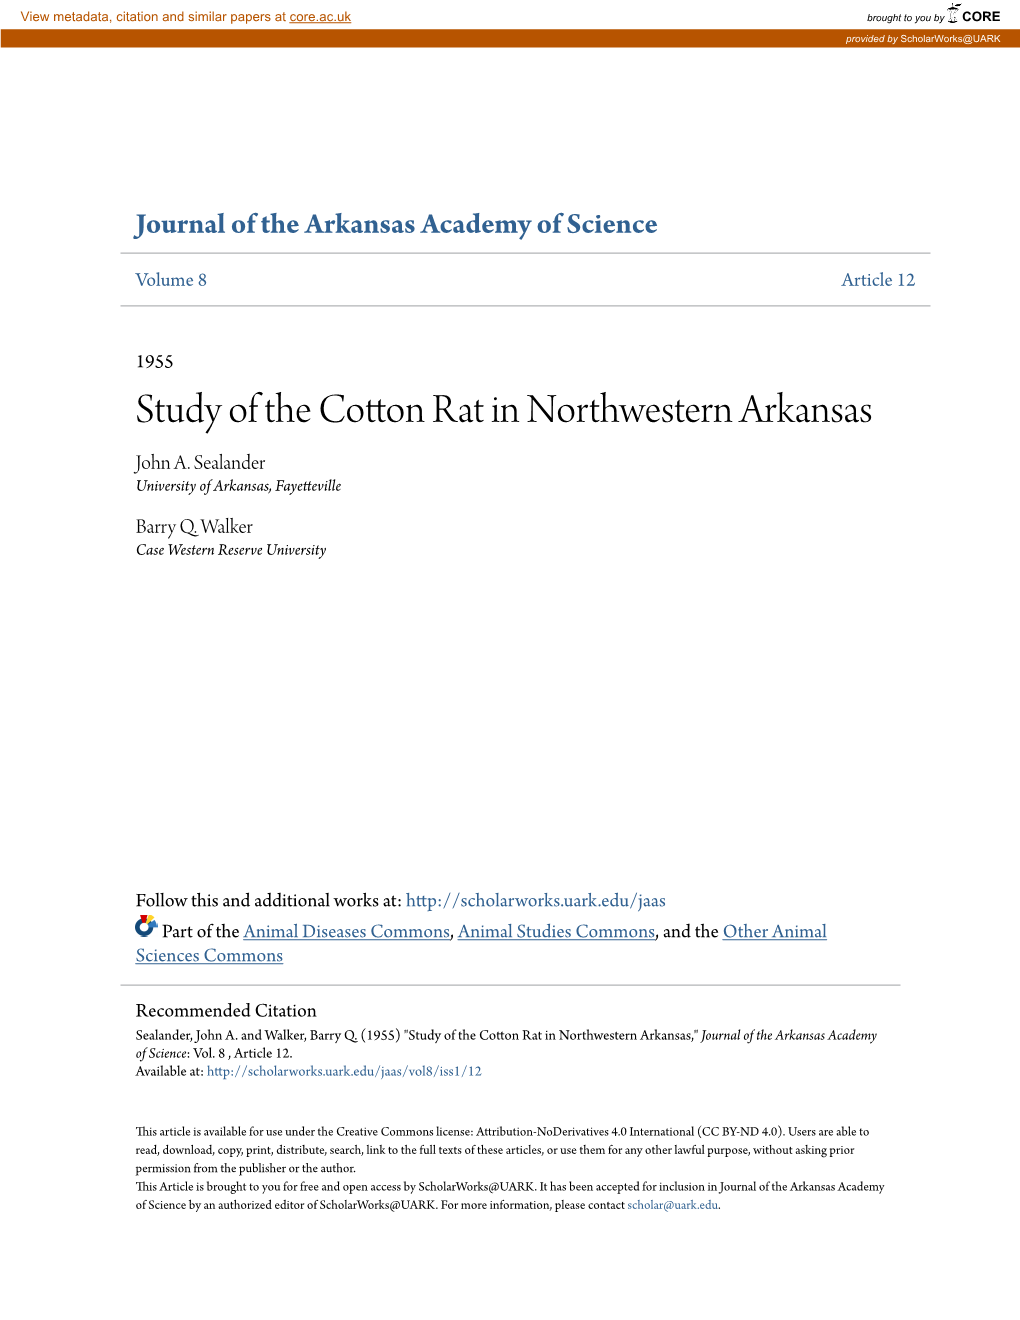 Study of the Cotton Rat in Northwestern Arkansas John A